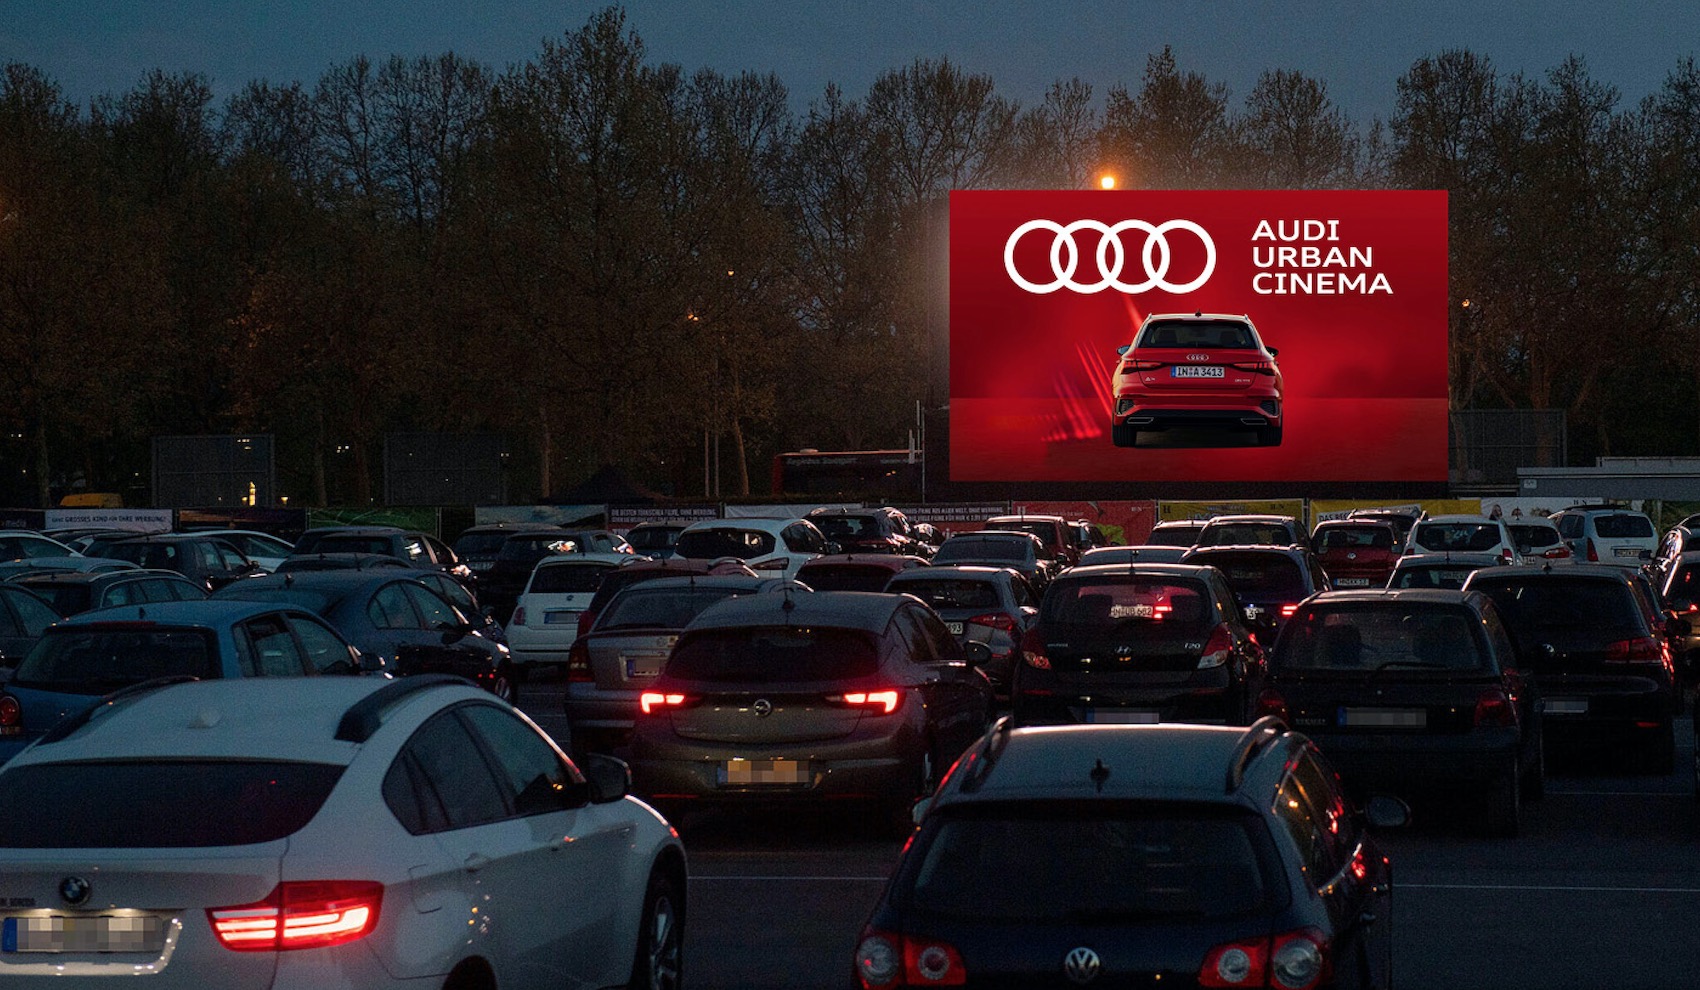 Audi Urban Cinema